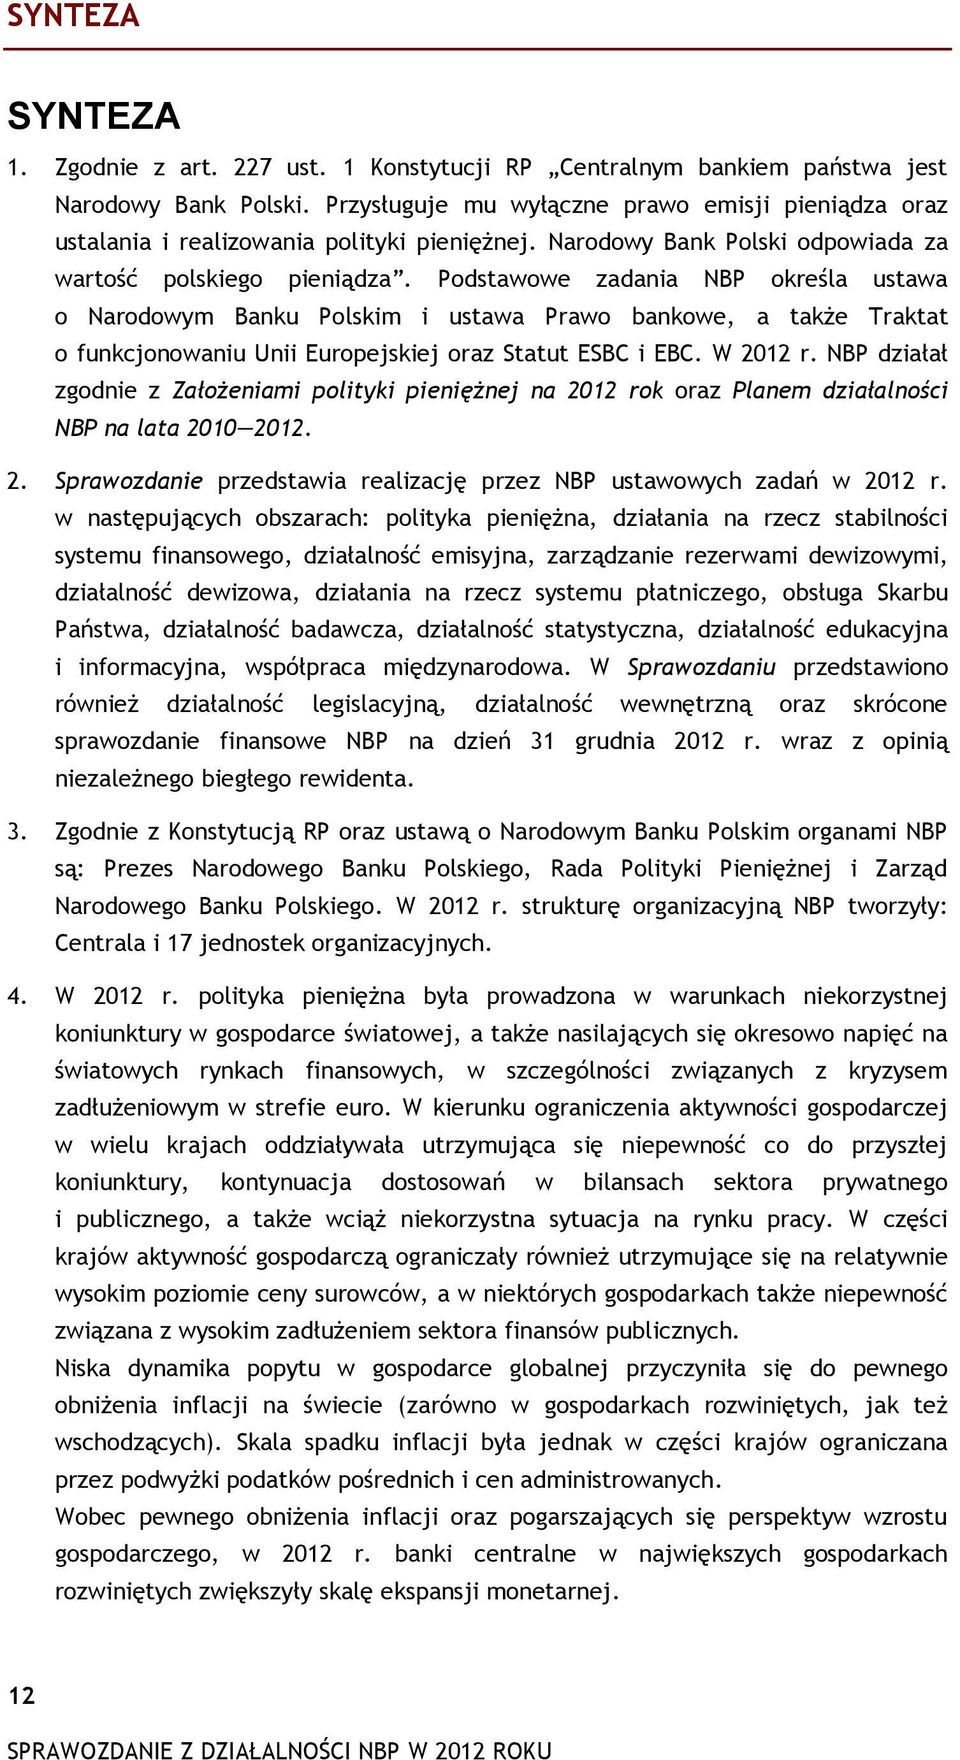 Podstawowe zadania NBP określa ustawa o Narodowym Banku Polskim i ustawa Prawo bankowe, a także Traktat o funkcjonowaniu Unii Europejskiej oraz Statut ESBC i EBC. W 2012 r.